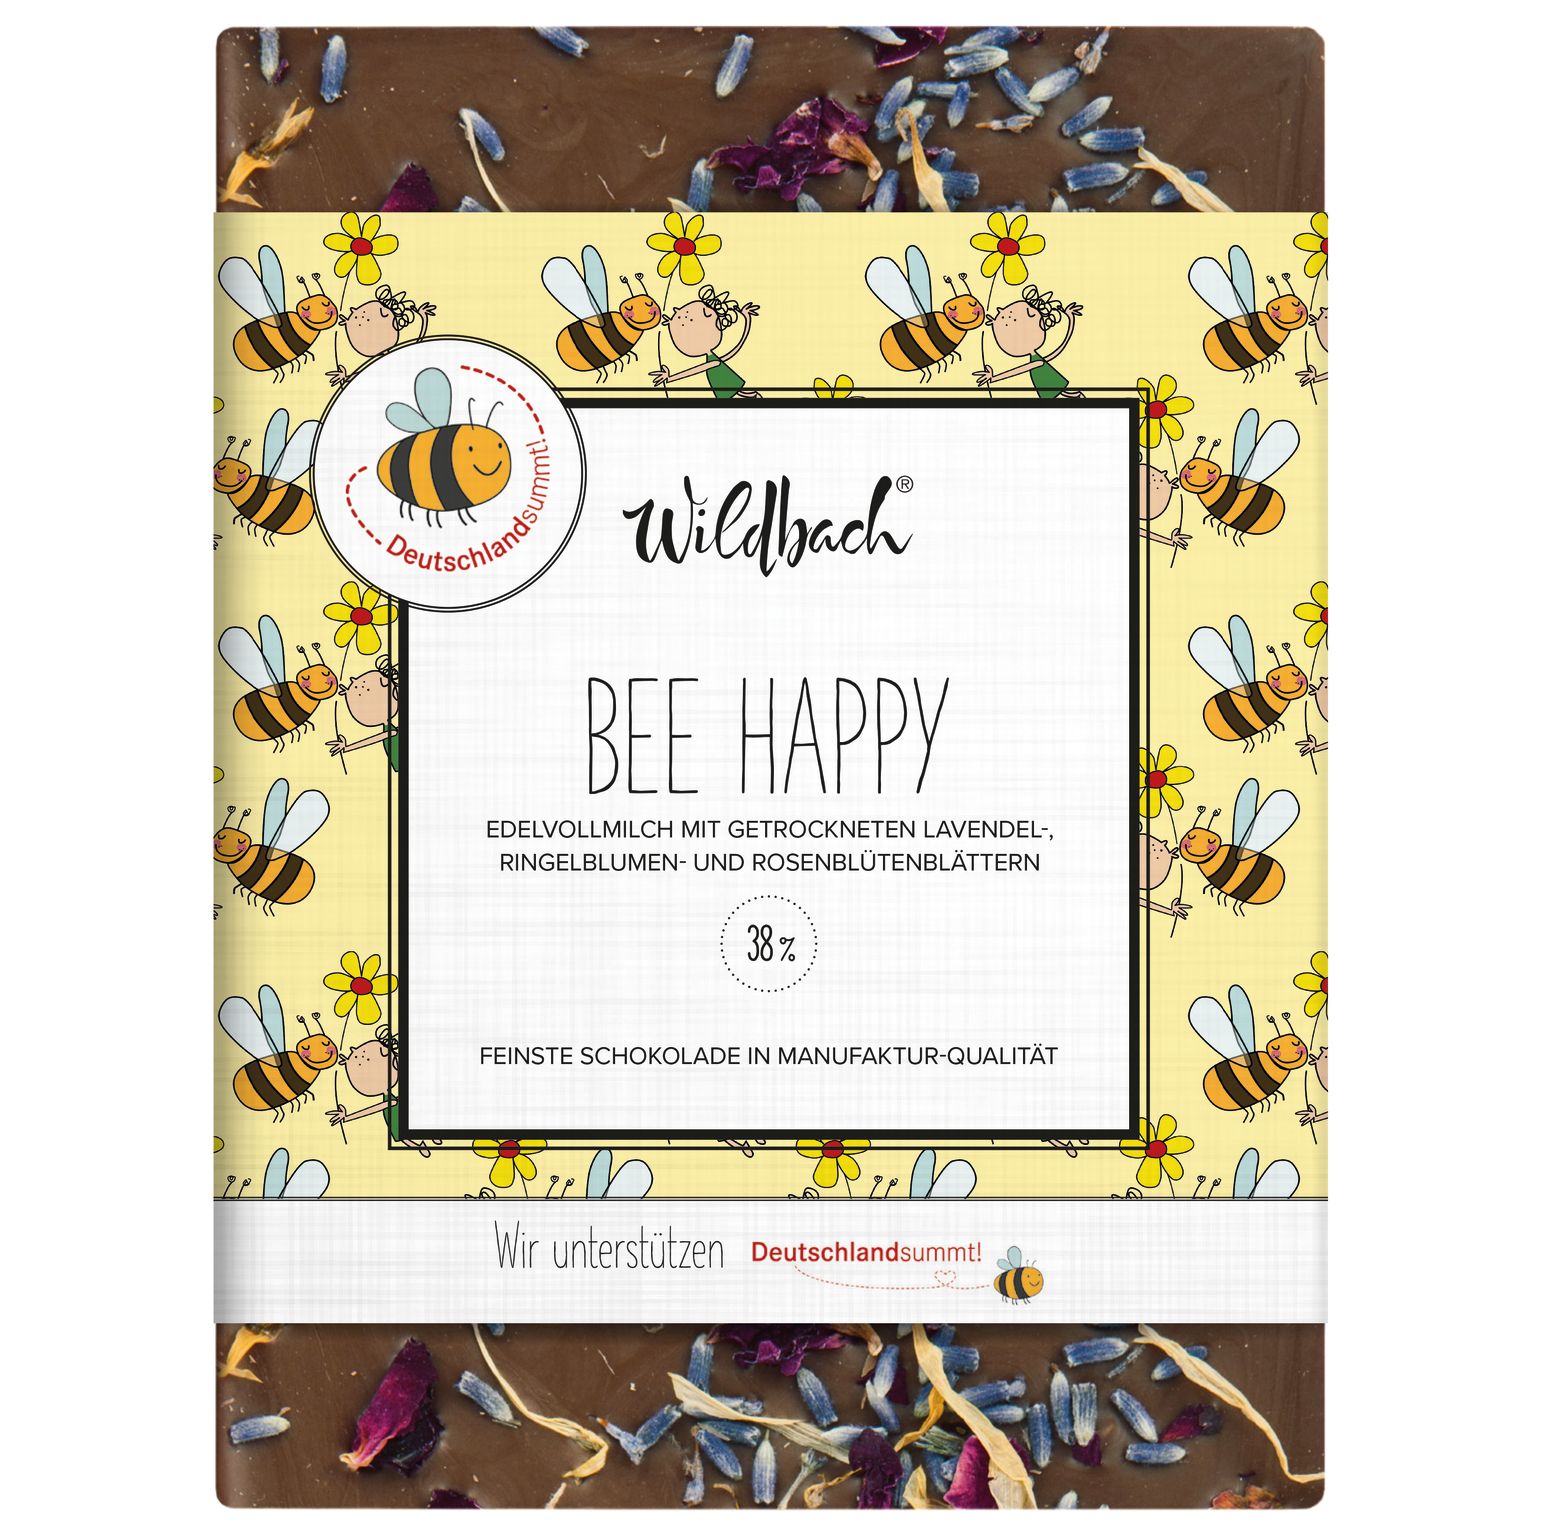 70g Tafel Deutschland summt Bee Happy - Edel VM 38%